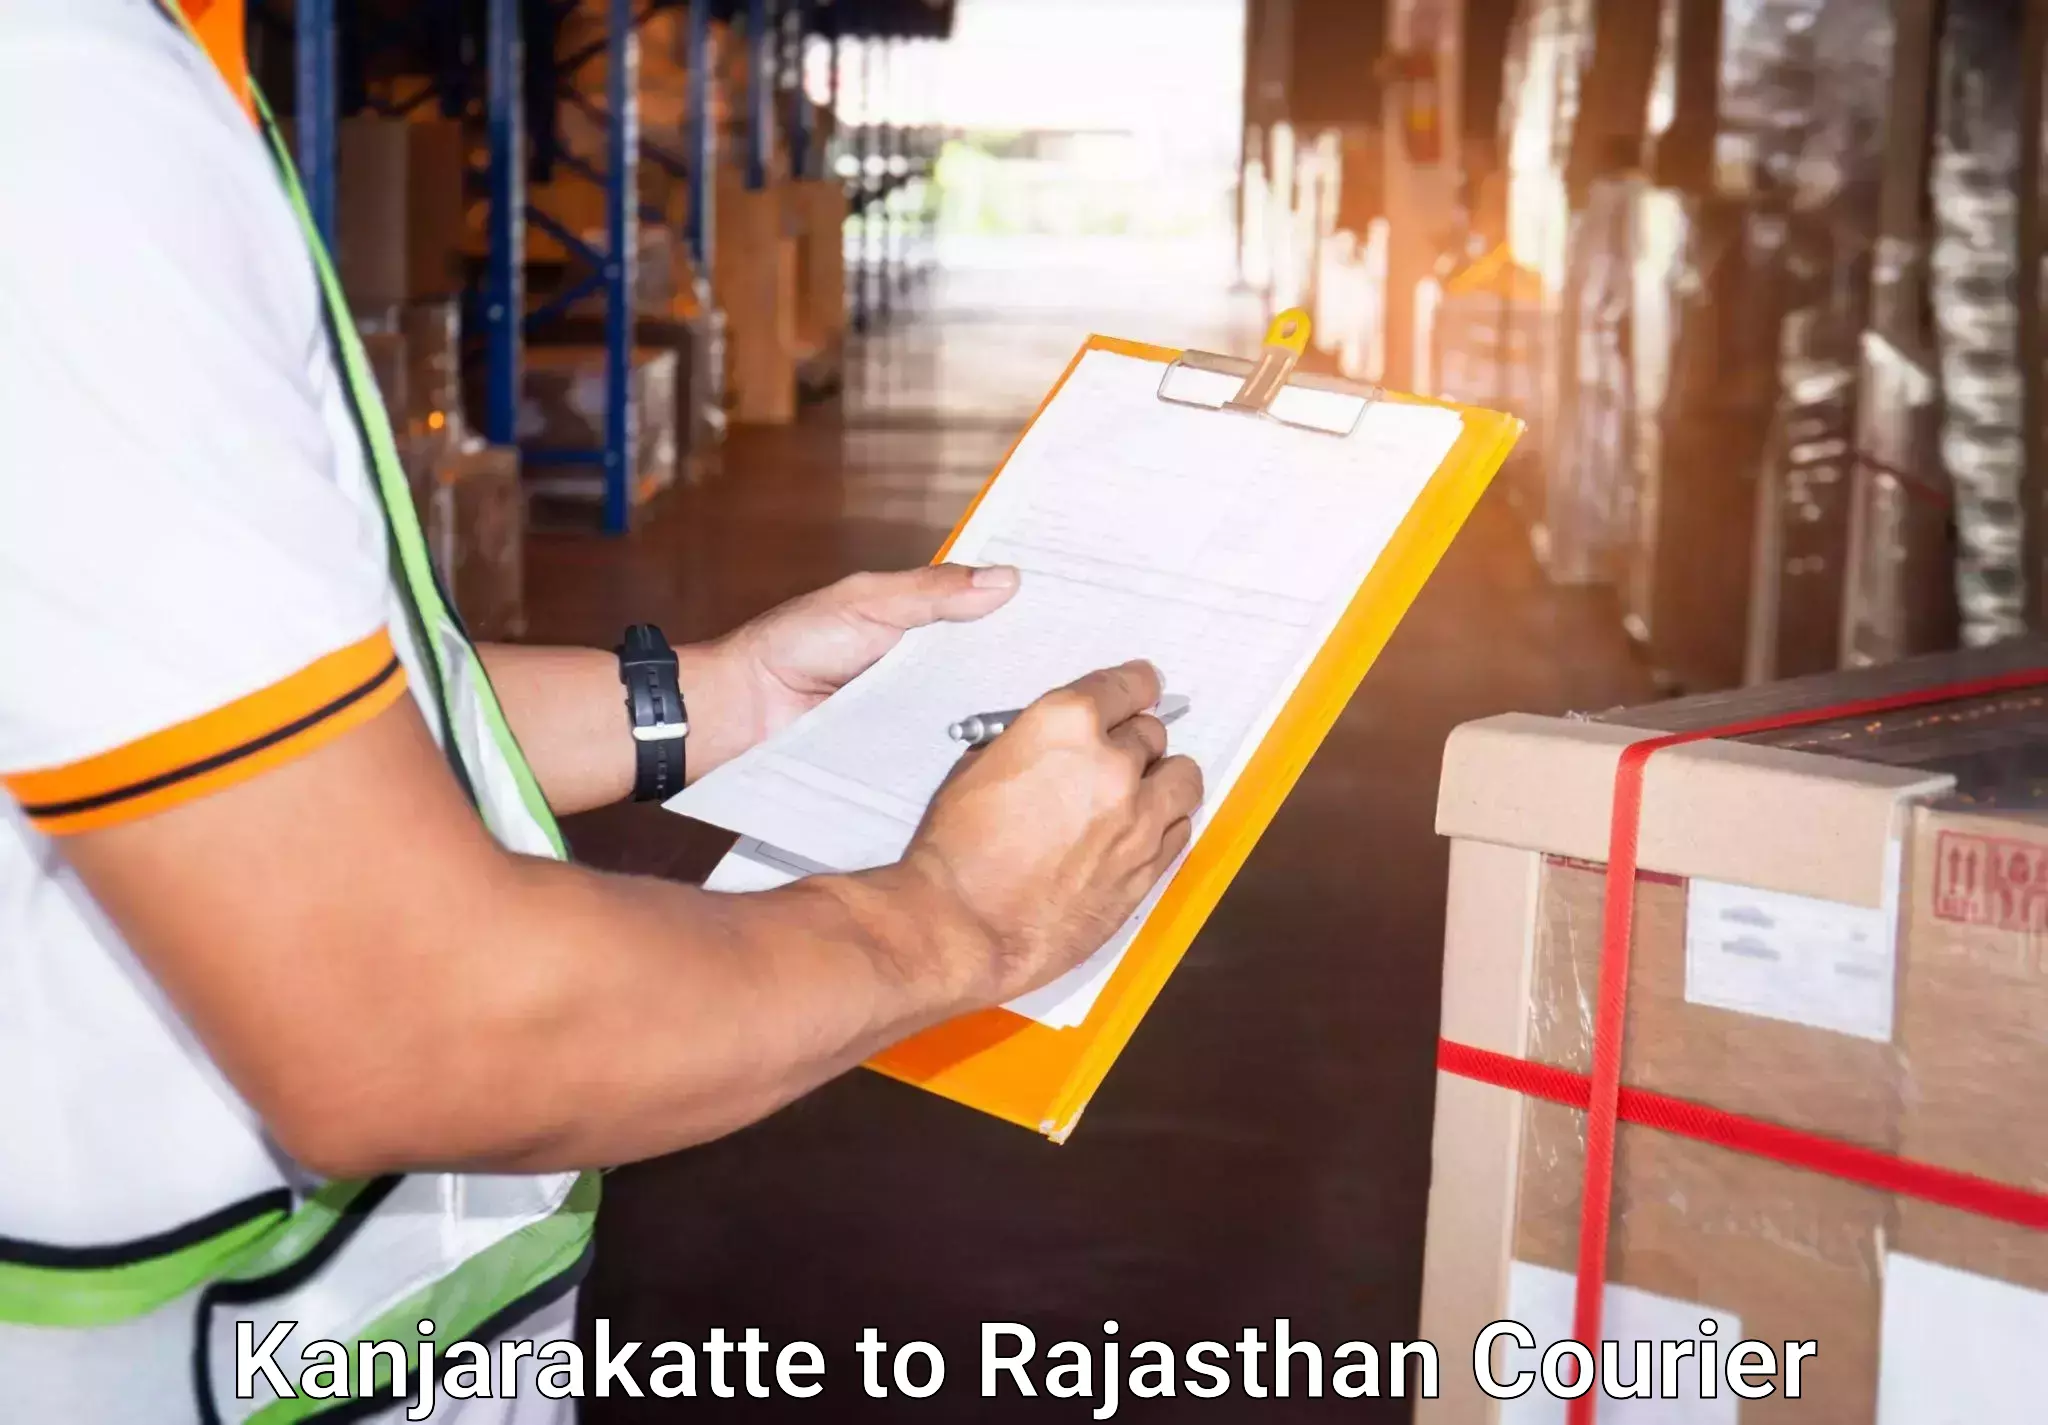 Baggage transport cost Kanjarakatte to Rajasthan